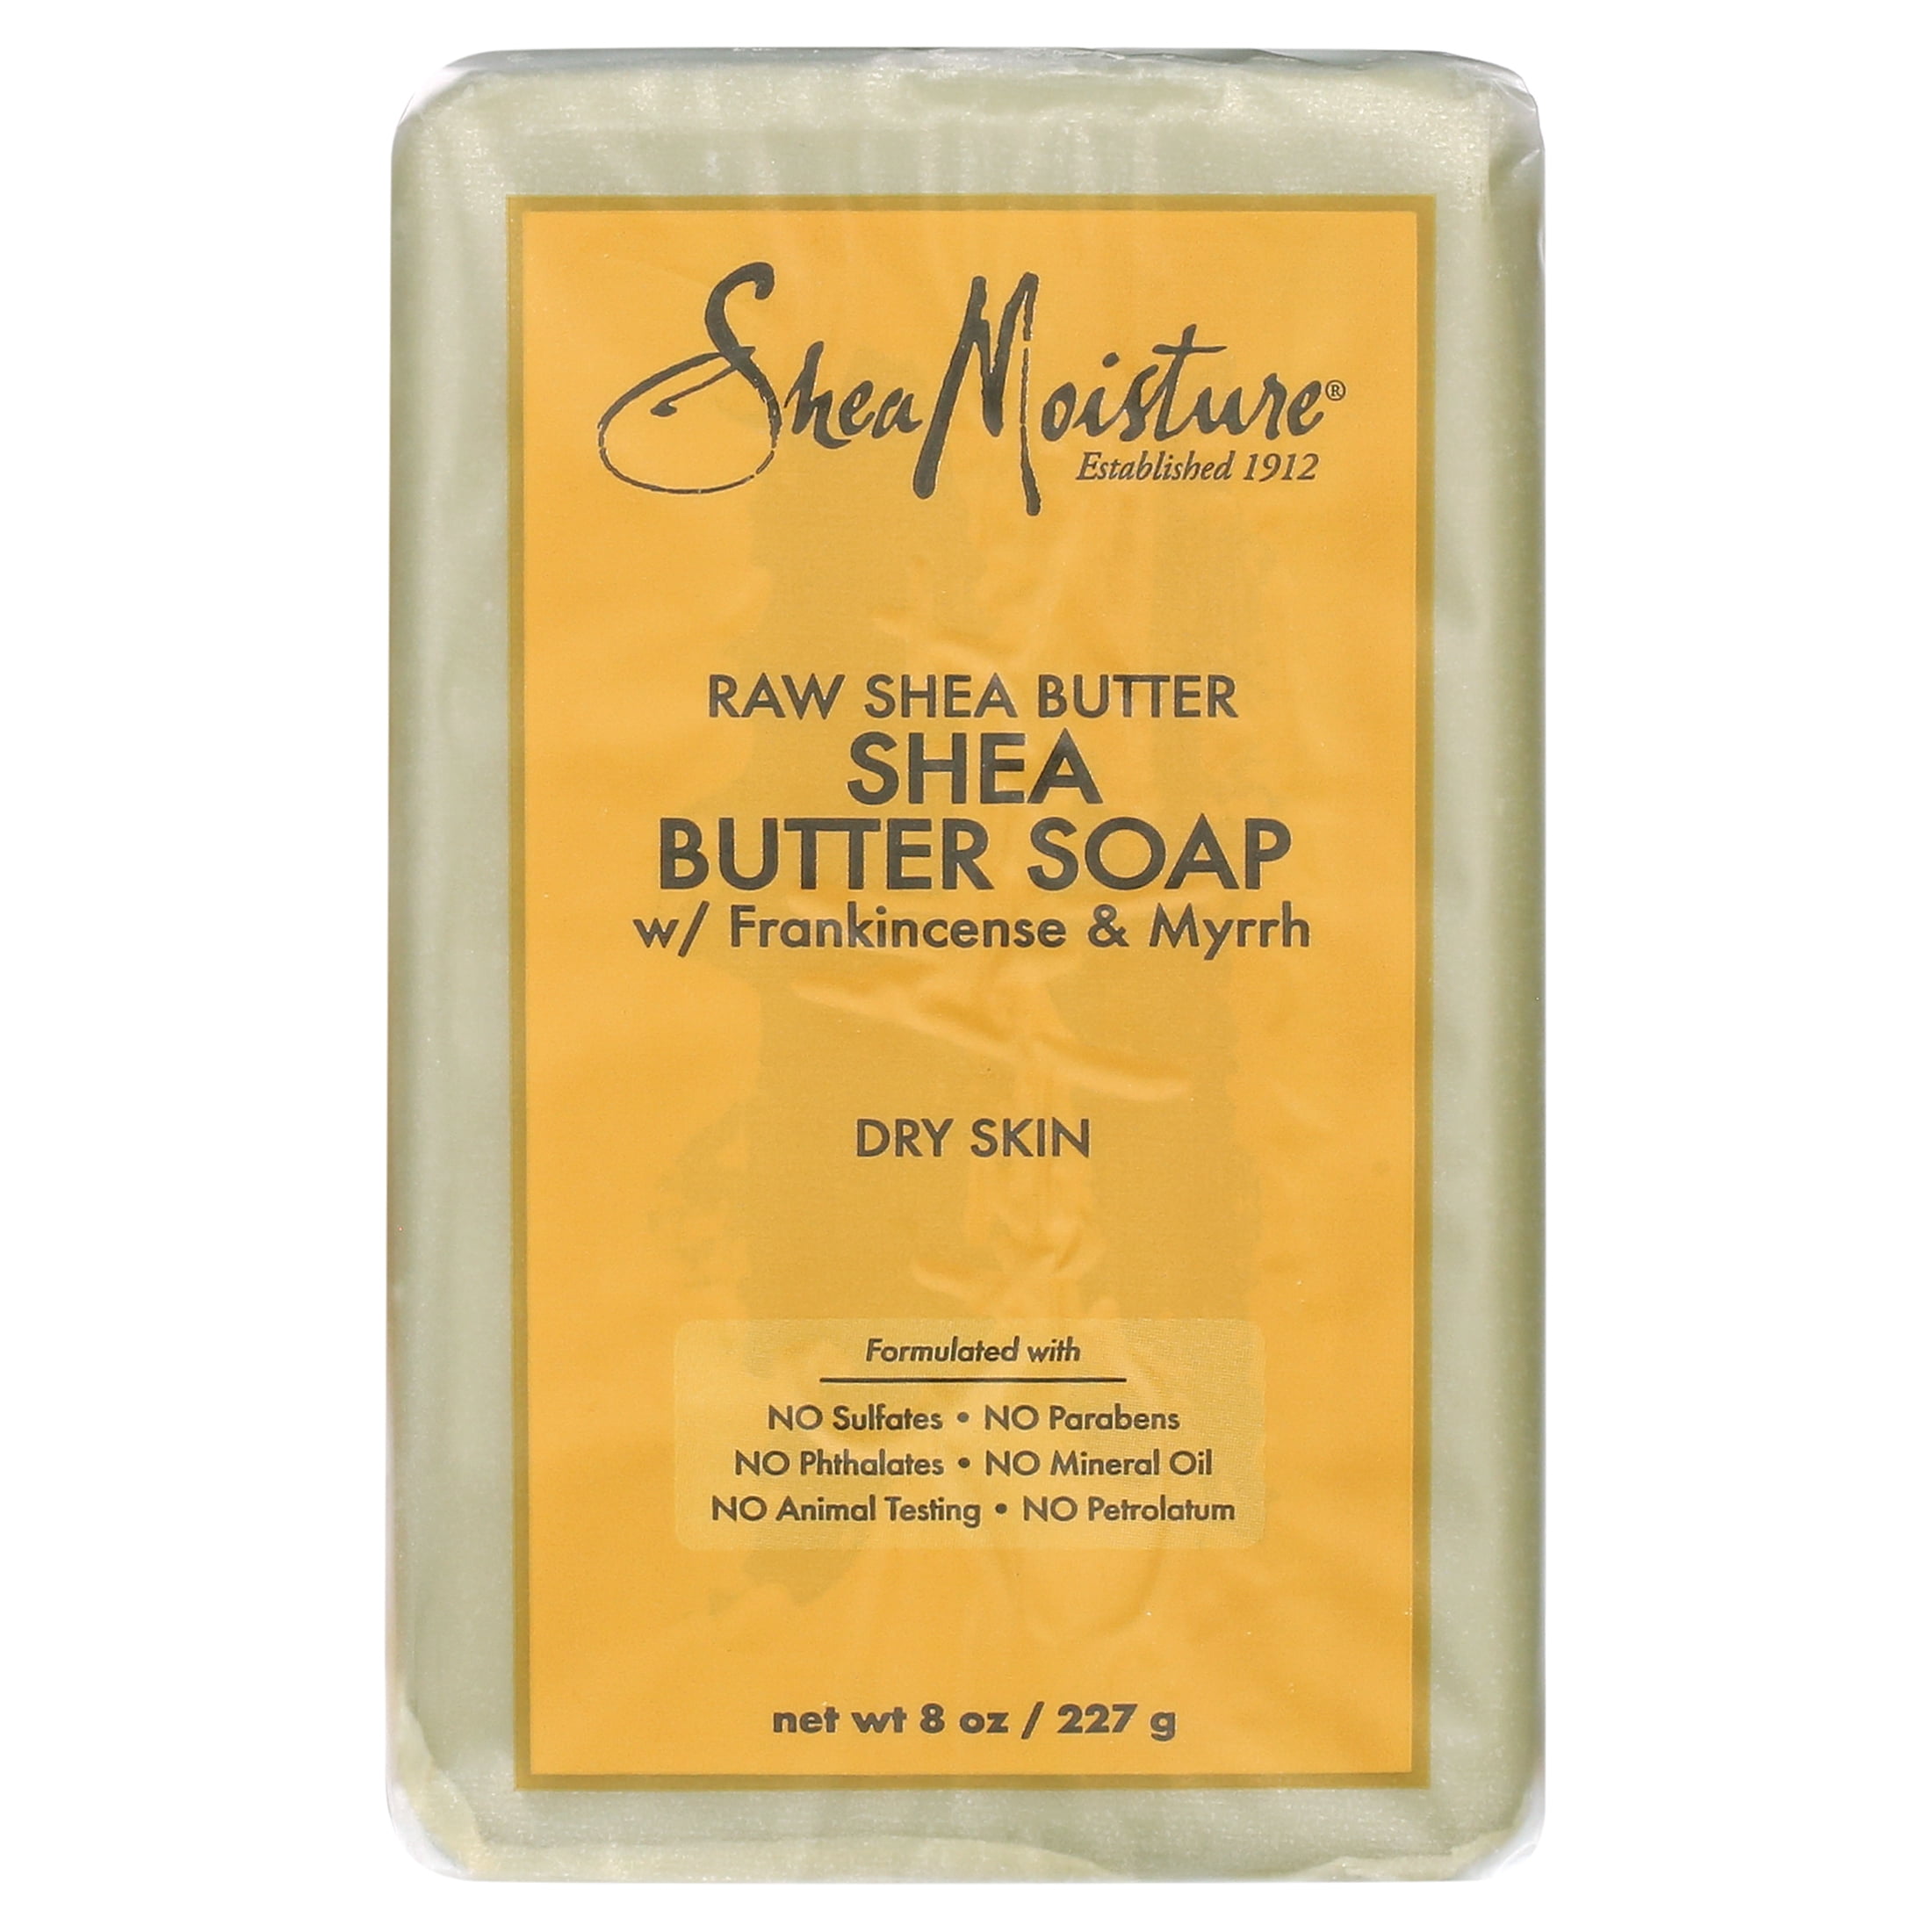 SheaMoisture Bar Soap Raw Shea Butter, 8 Oz.